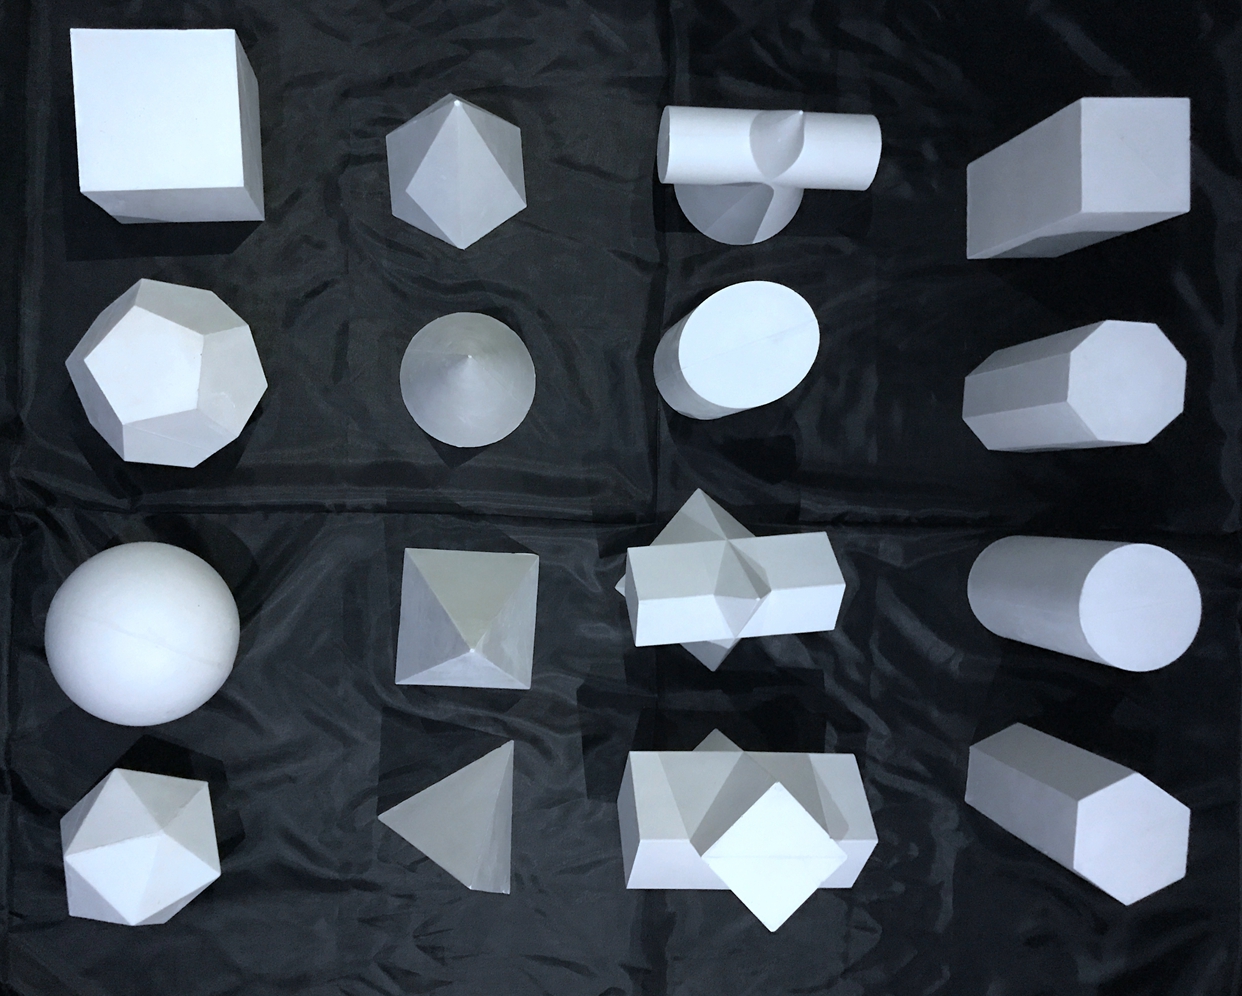 石膏几何体教具模型美术静物几何体单个摆件写生石膏教具几何型体